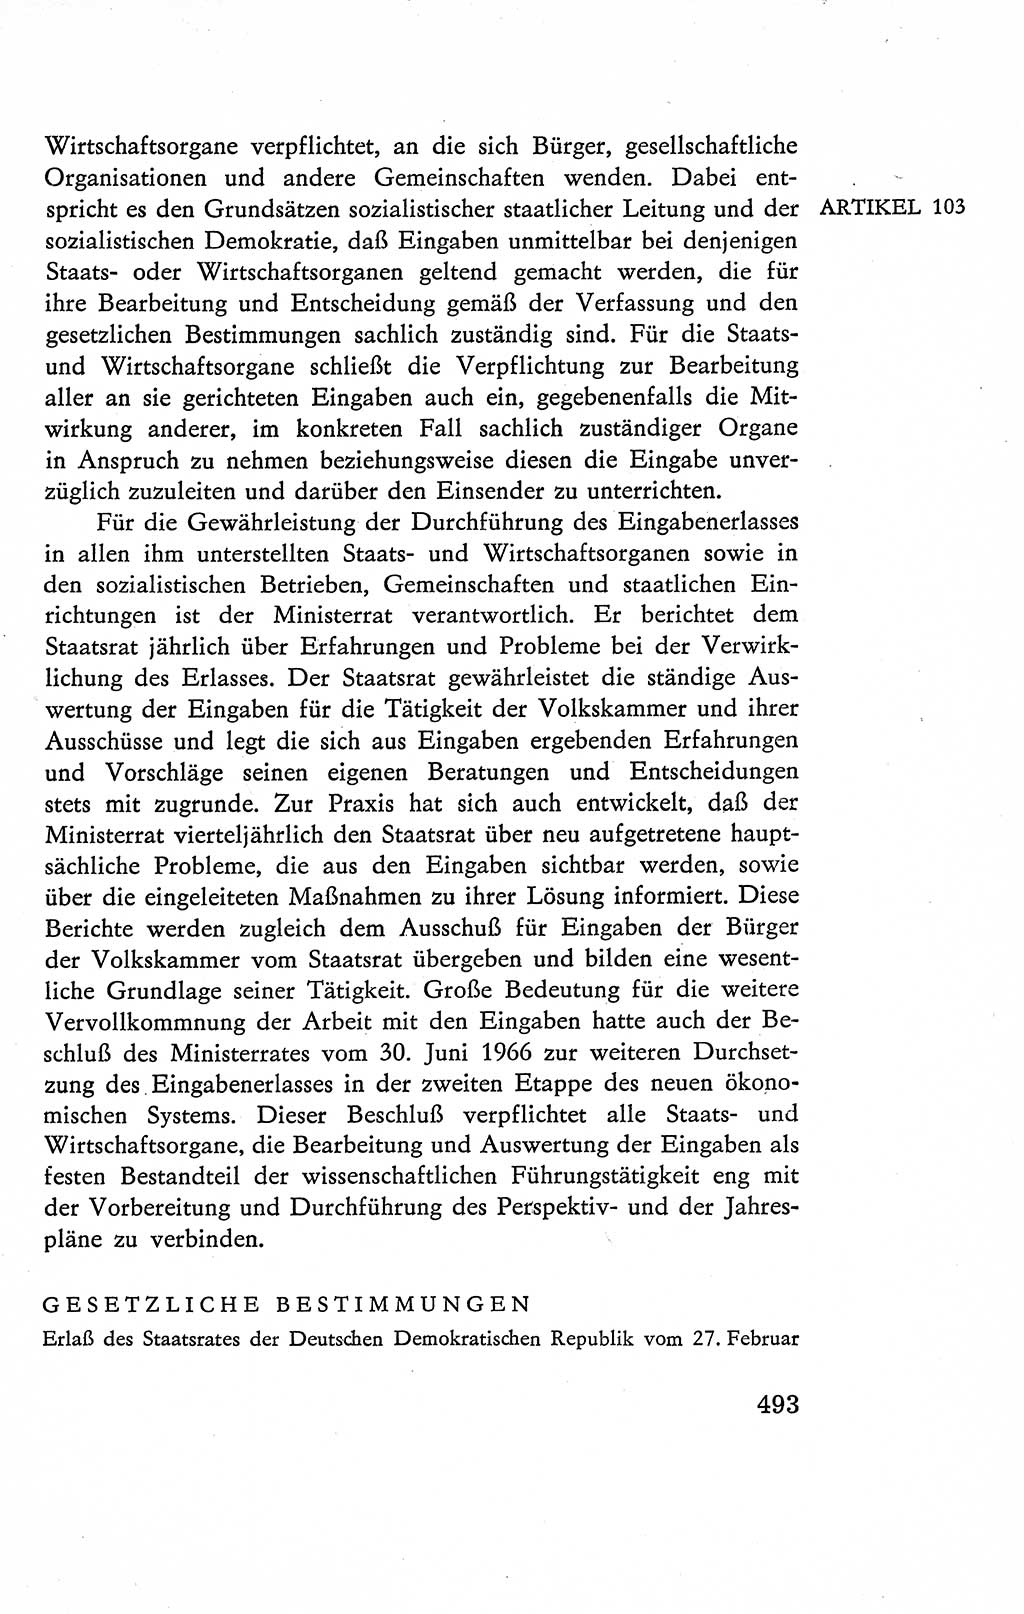 Verfassung der Deutschen Demokratischen Republik (DDR), Dokumente, Kommentar 1969, Band 2, Seite 493 (Verf. DDR Dok. Komm. 1969, Bd. 2, S. 493)